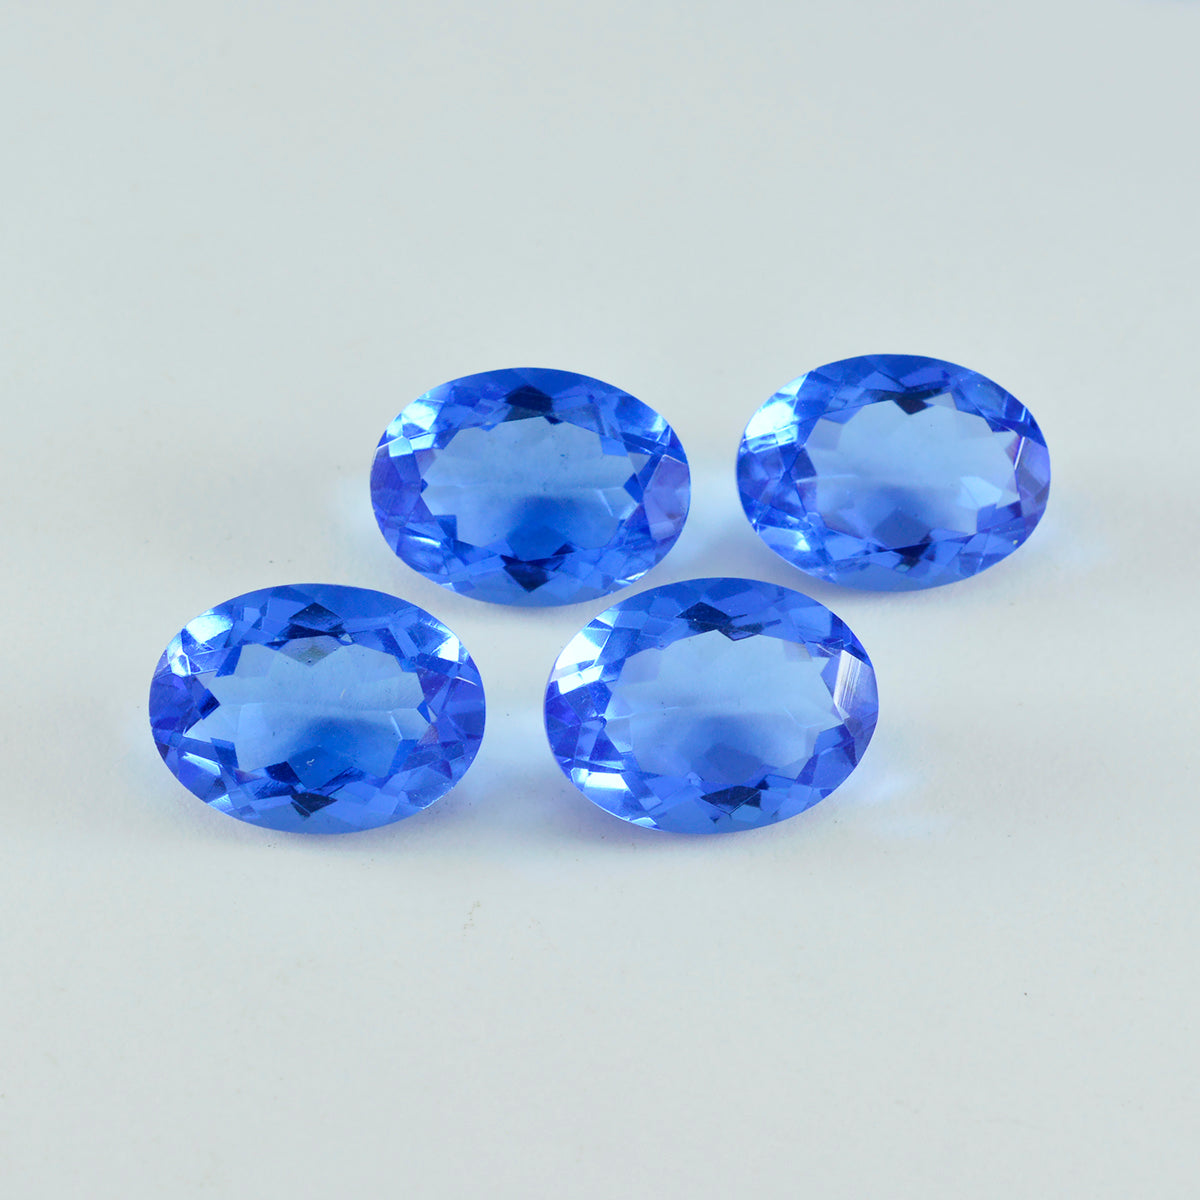 riyogems 1шт синий сапфир cz ограненный 10x14 мм овальная форма привлекательное качество россыпь драгоценных камней